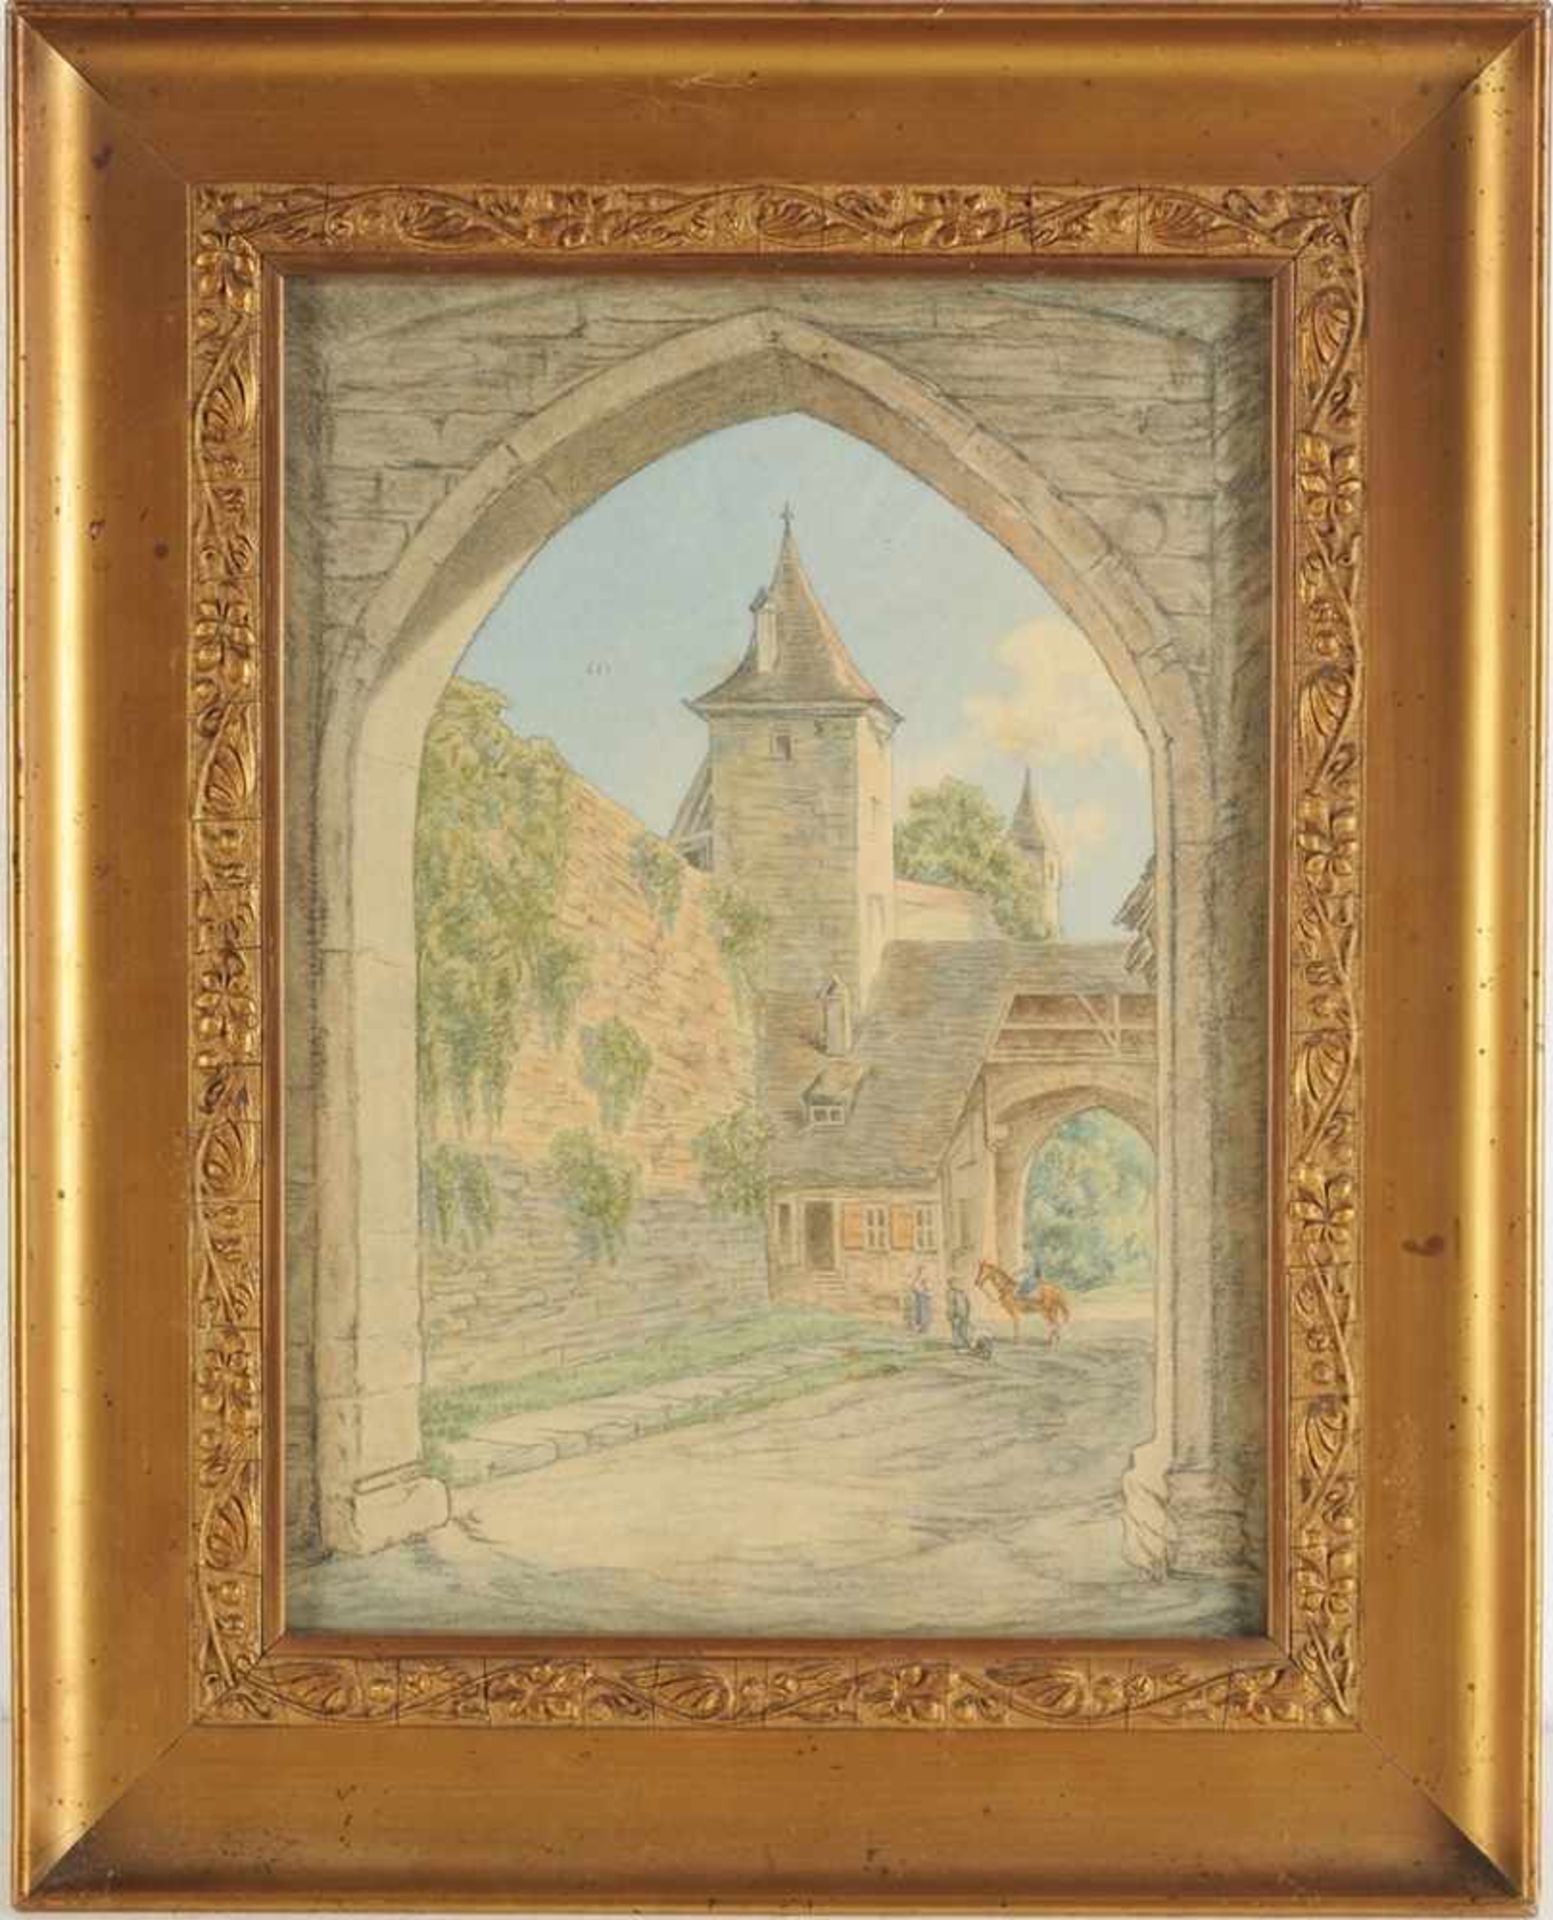 Unbekannt(Deutscher Maler, um 1900) Blei, Aquarell/Papier. Blick durch einen Spitzbogen auf eine